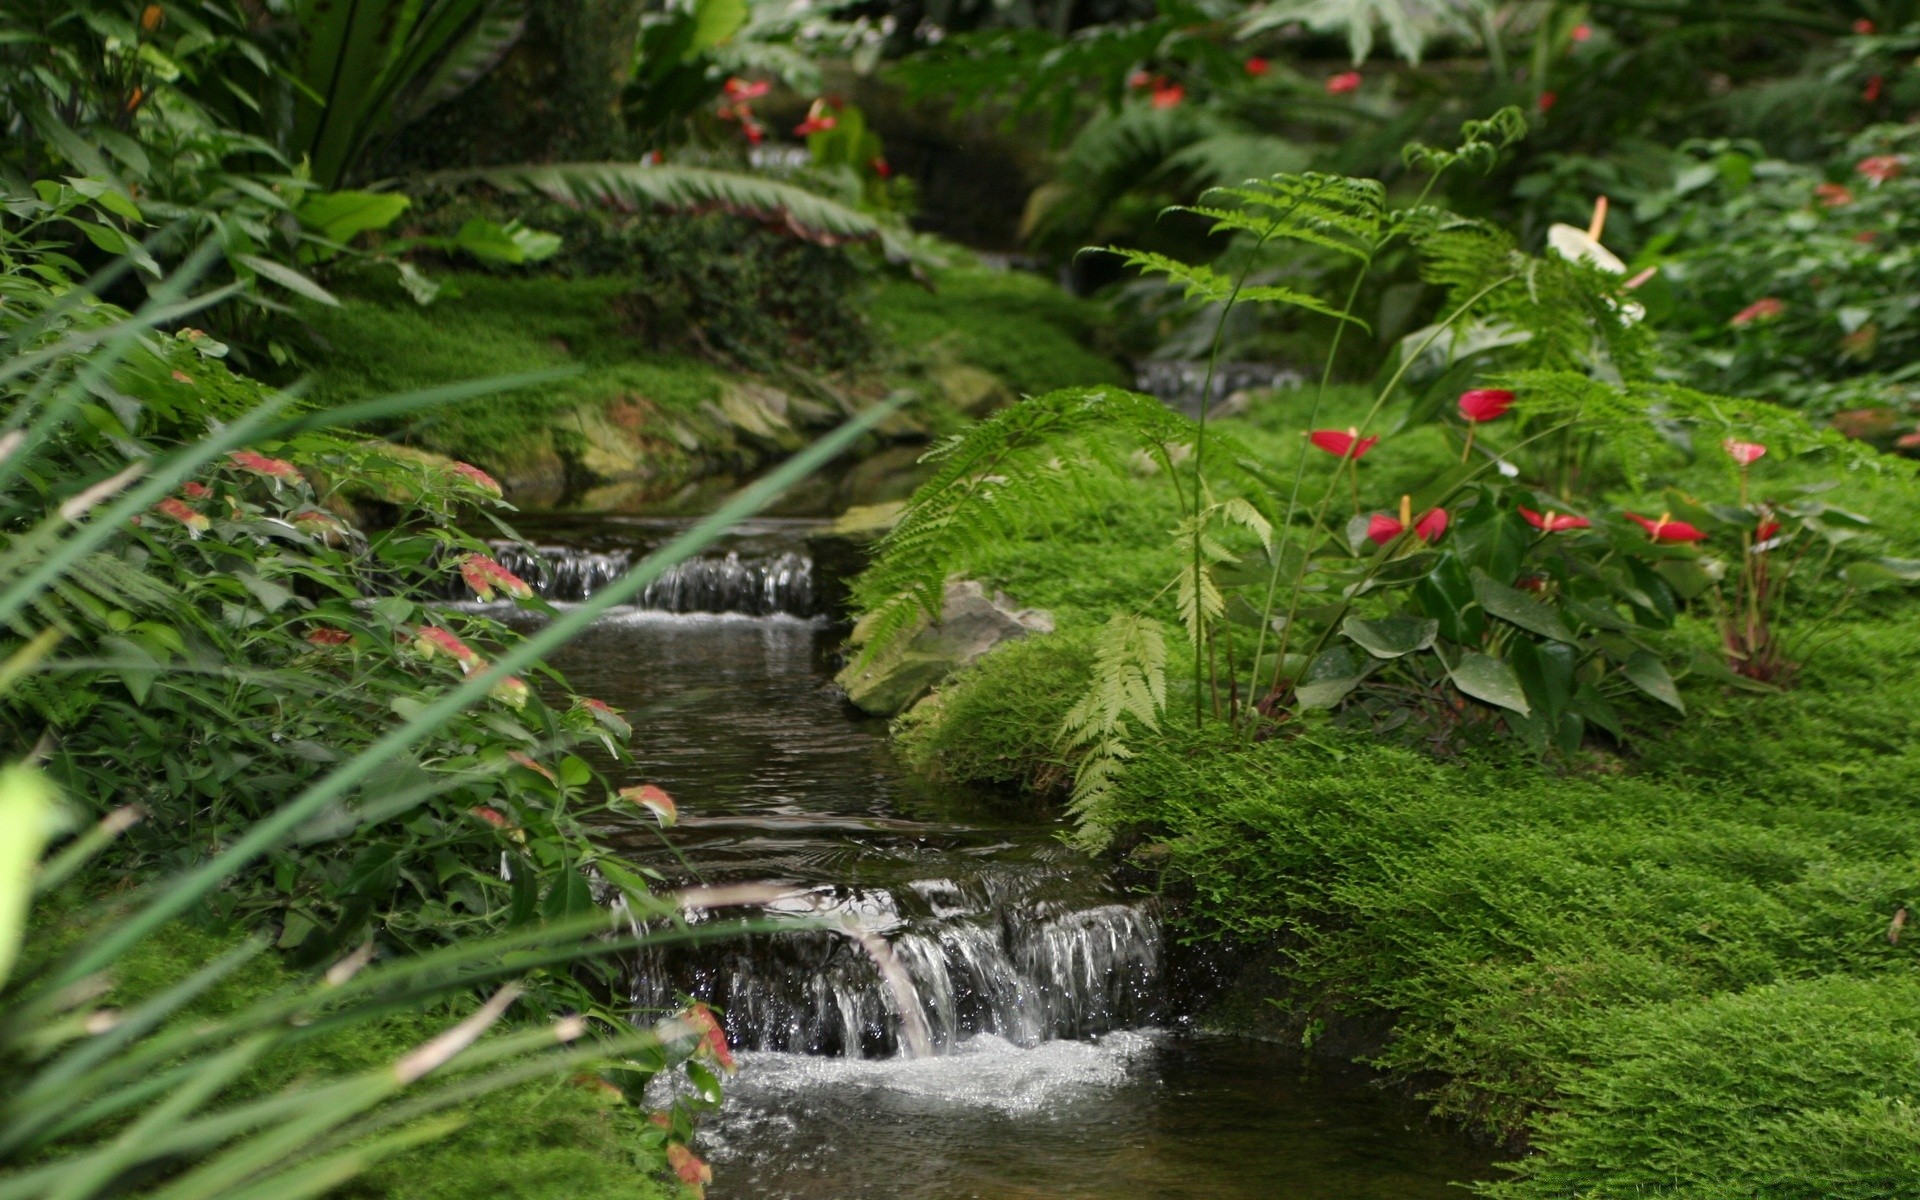 реки пруды и ручьи прудов и ручьев лист природа воды парк сад дерево на открытом воздухе лето пышные флора древесины водопад пейзаж цветок рост среды трава река